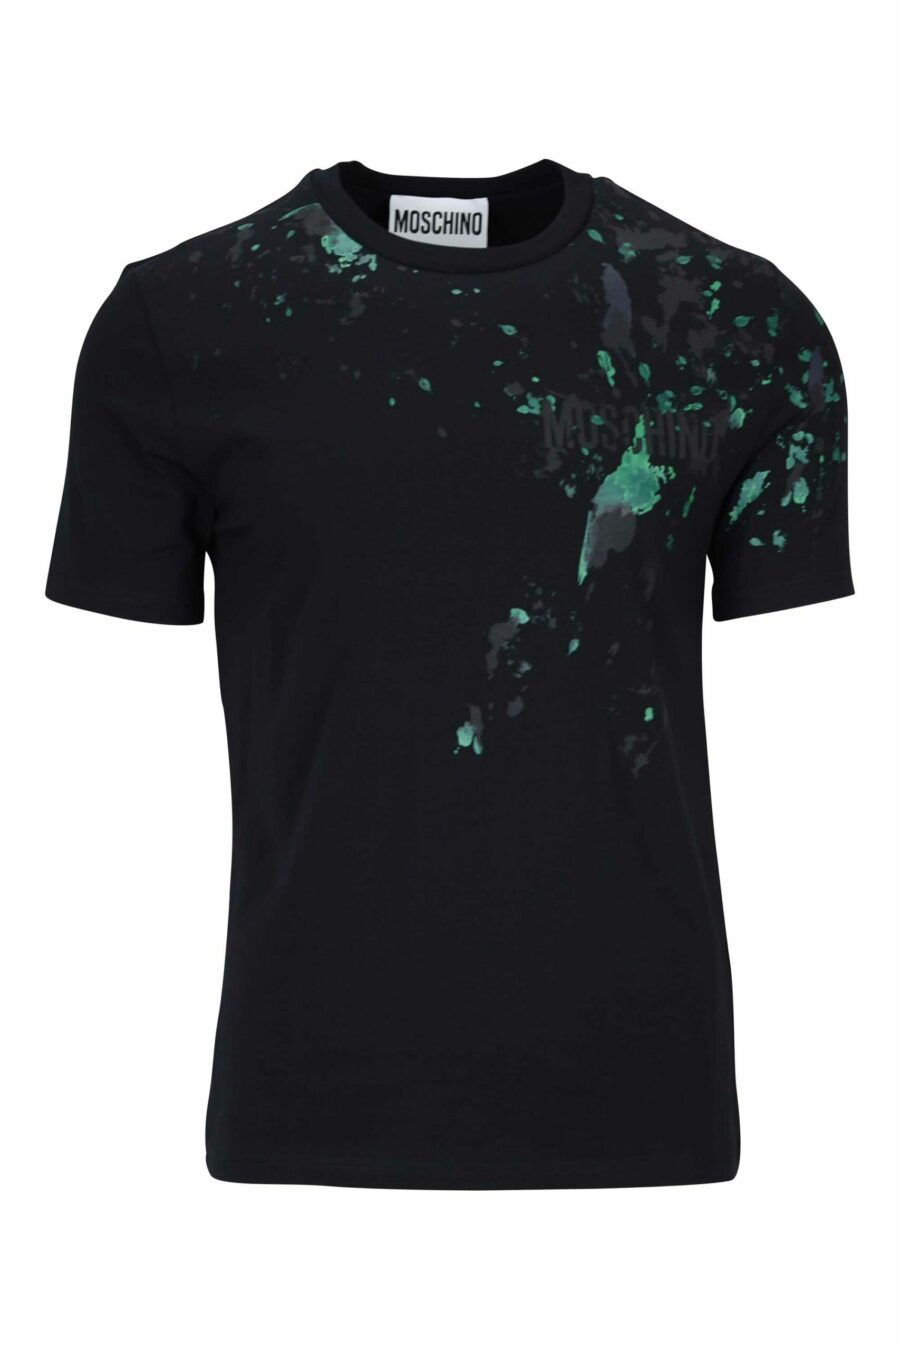 Schwarzes T-Shirt mit Minilogo "couture milano" mit mehrfarbigem "splash" - 667113392721 skaliert